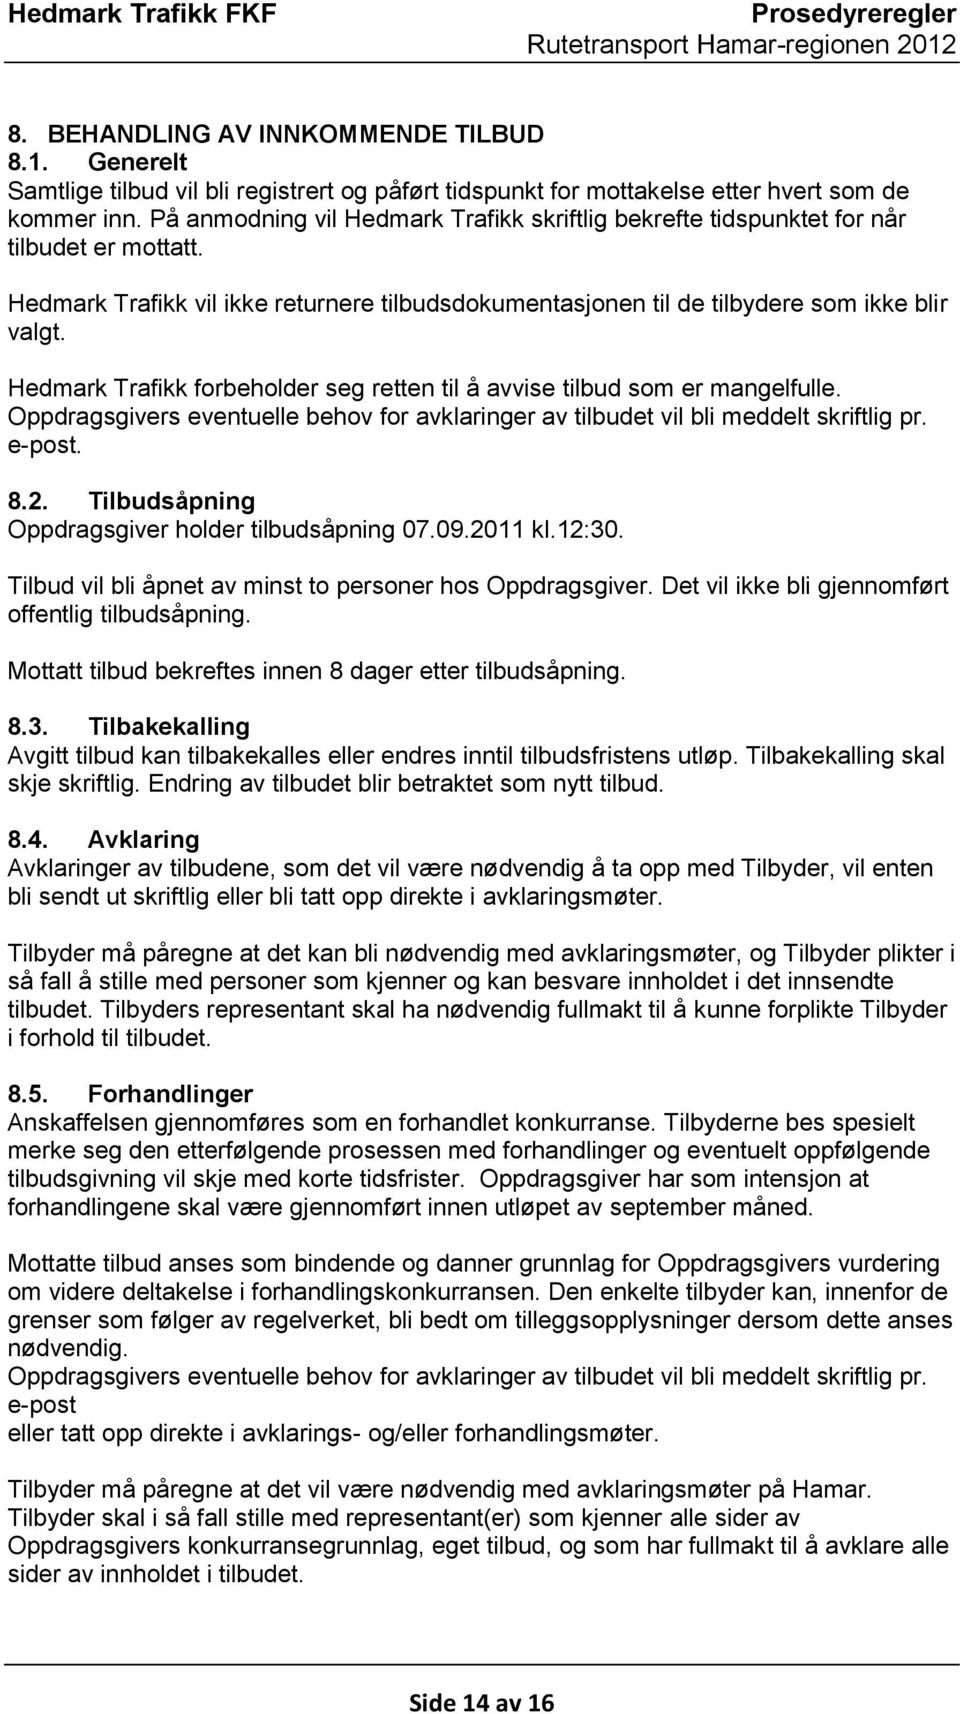 Hedmark Trafikk forbeholder seg retten til å avvise tilbud som er mangelfulle. Oppdragsgivers eventuelle behov for avklaringer av tilbudet vil bli meddelt skriftlig pr. e-post. 8.2.